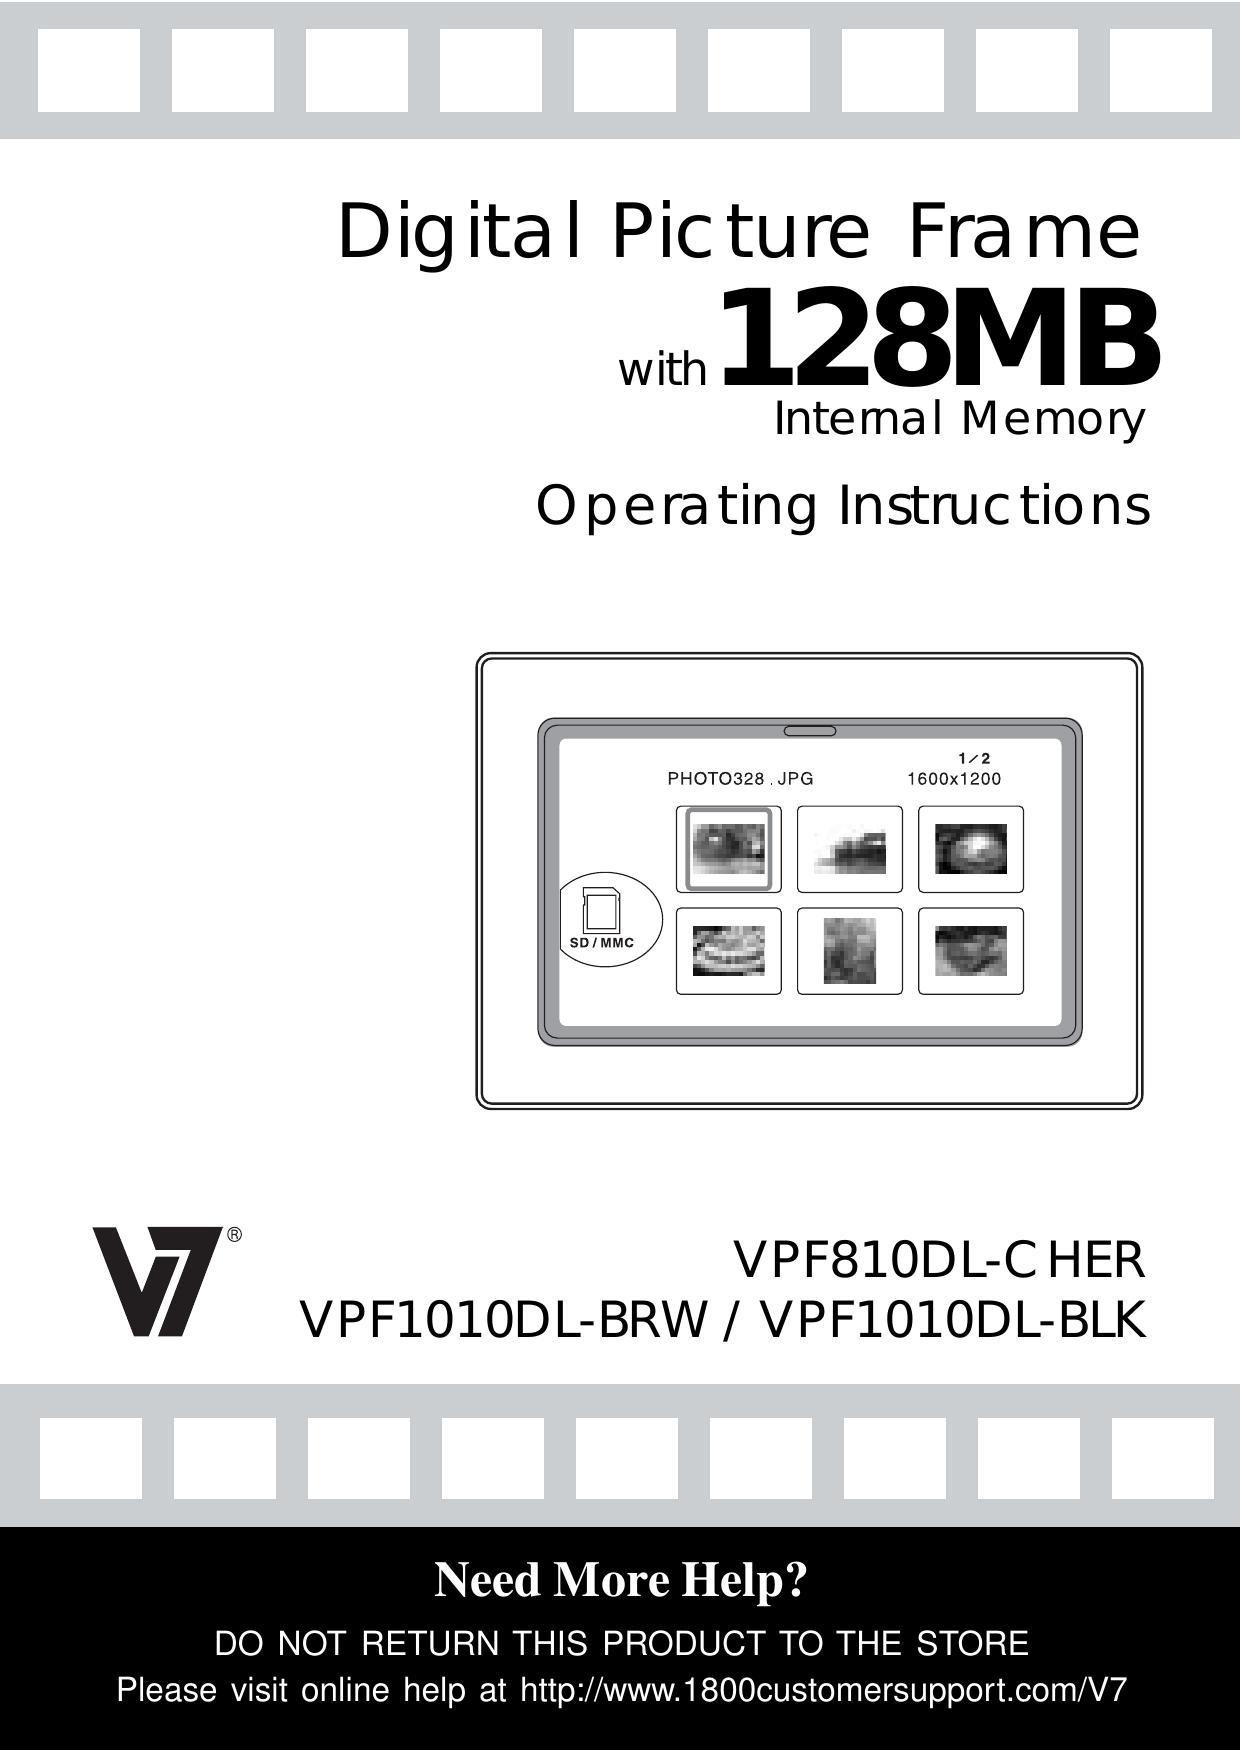 Venturer VPF1010DL-BRW Digital Photo Frame User Manual